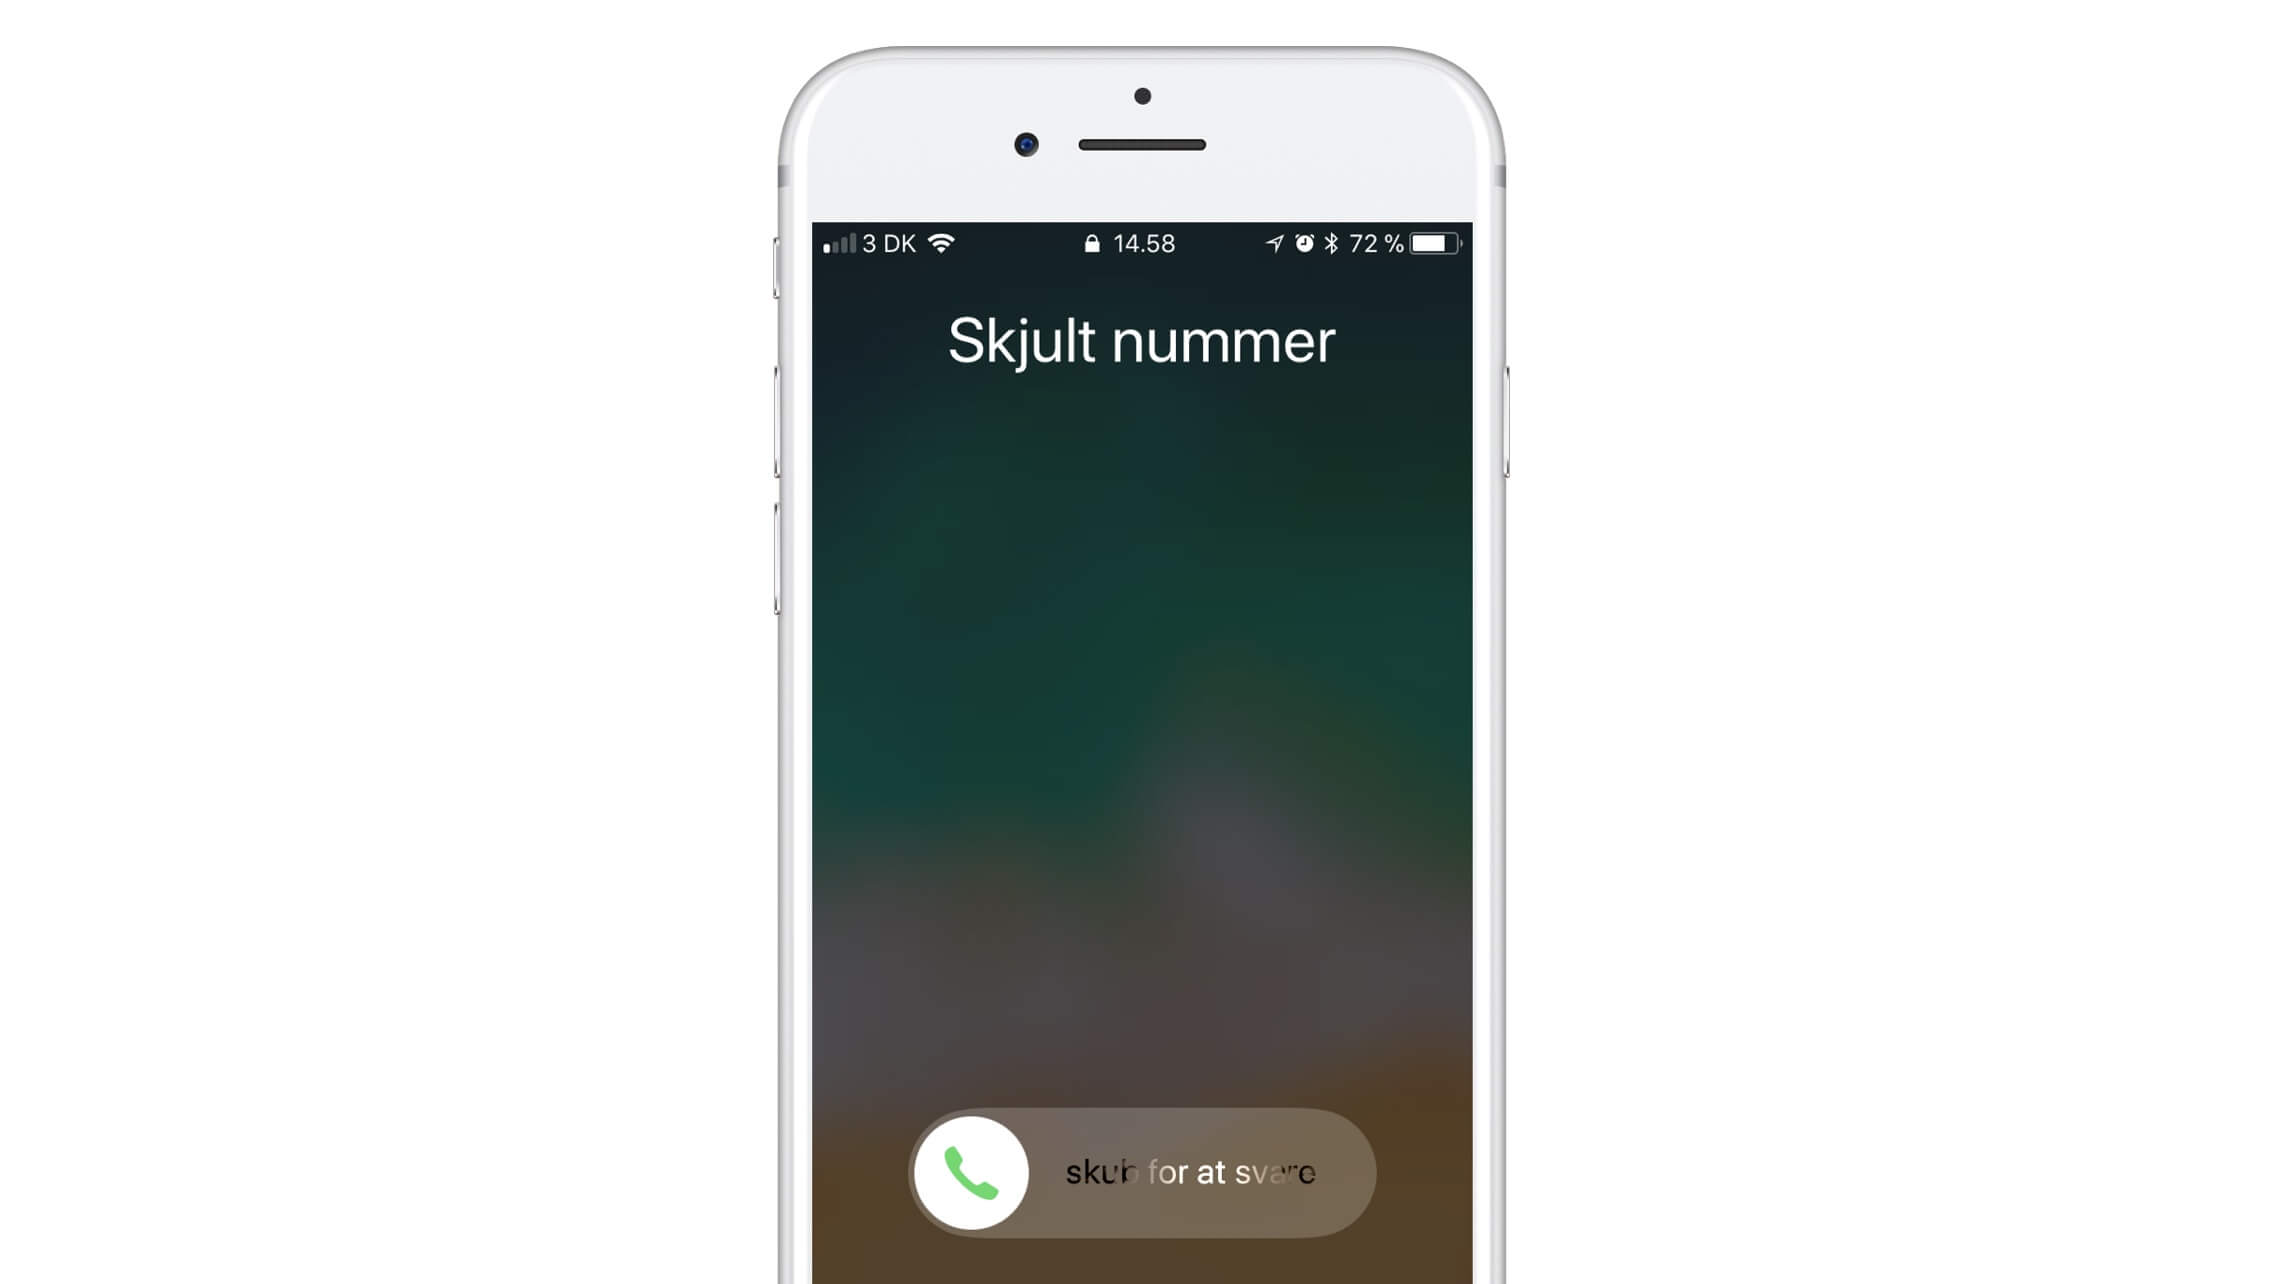 Ringer du med skjult nummer efter opdateringen til iOS 11? | ON X